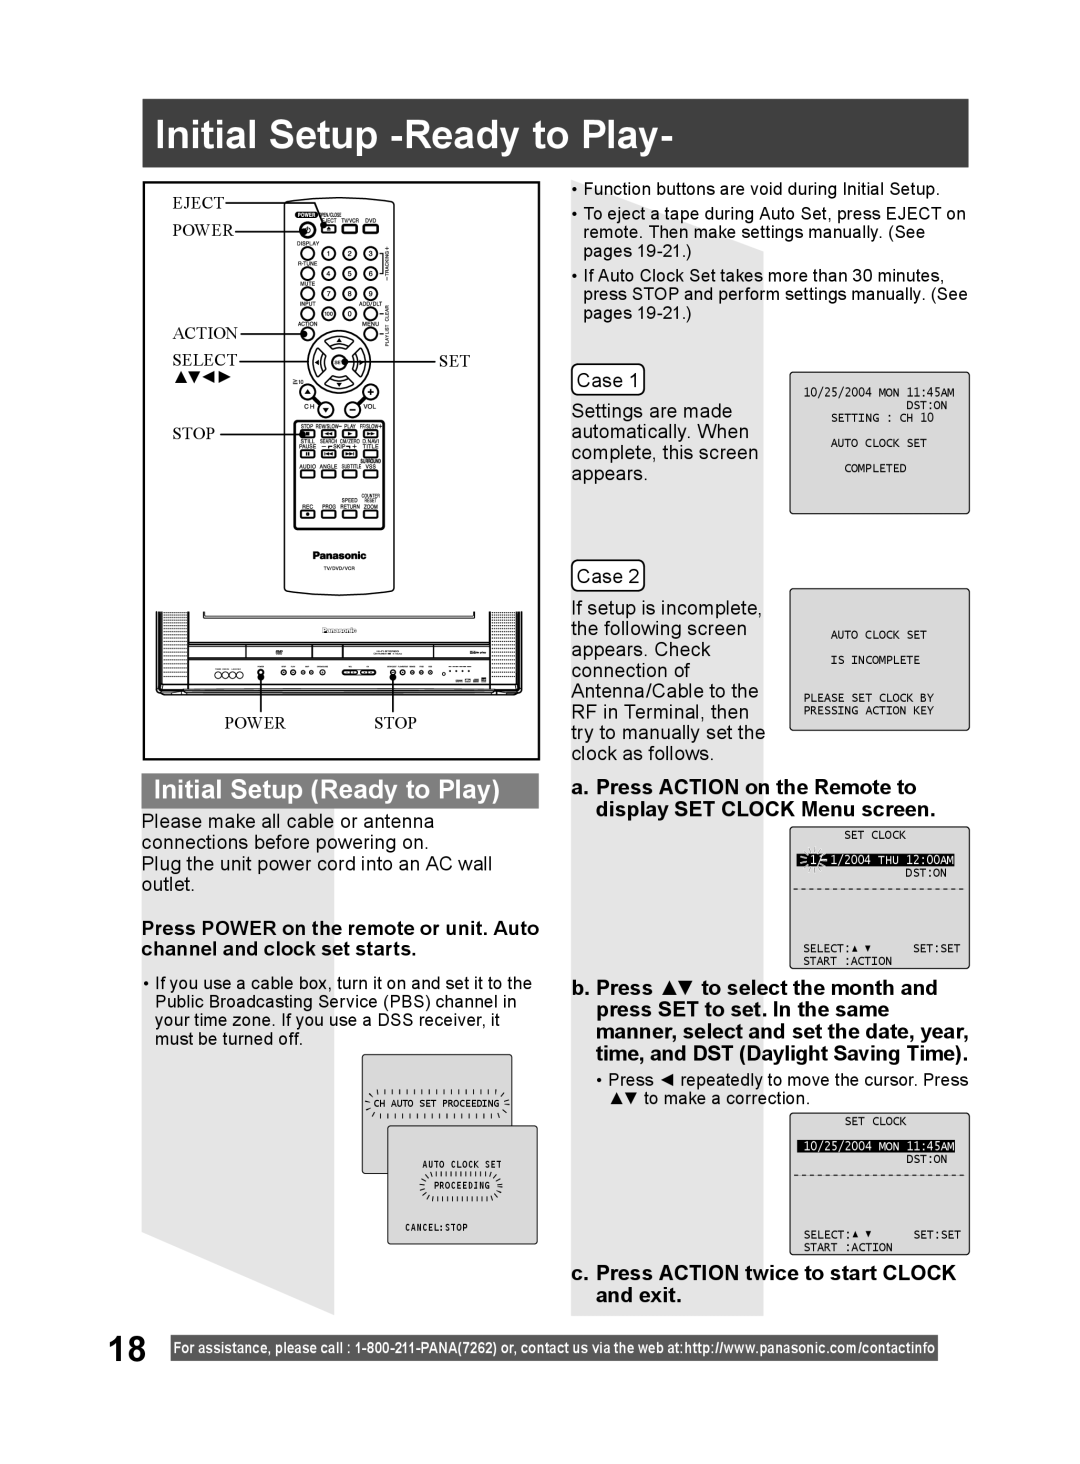 Panasonic PV DF2004, PV DF2704 manual Initial Setup -Ready to Play, Initial Setup Ready to Play, Case 